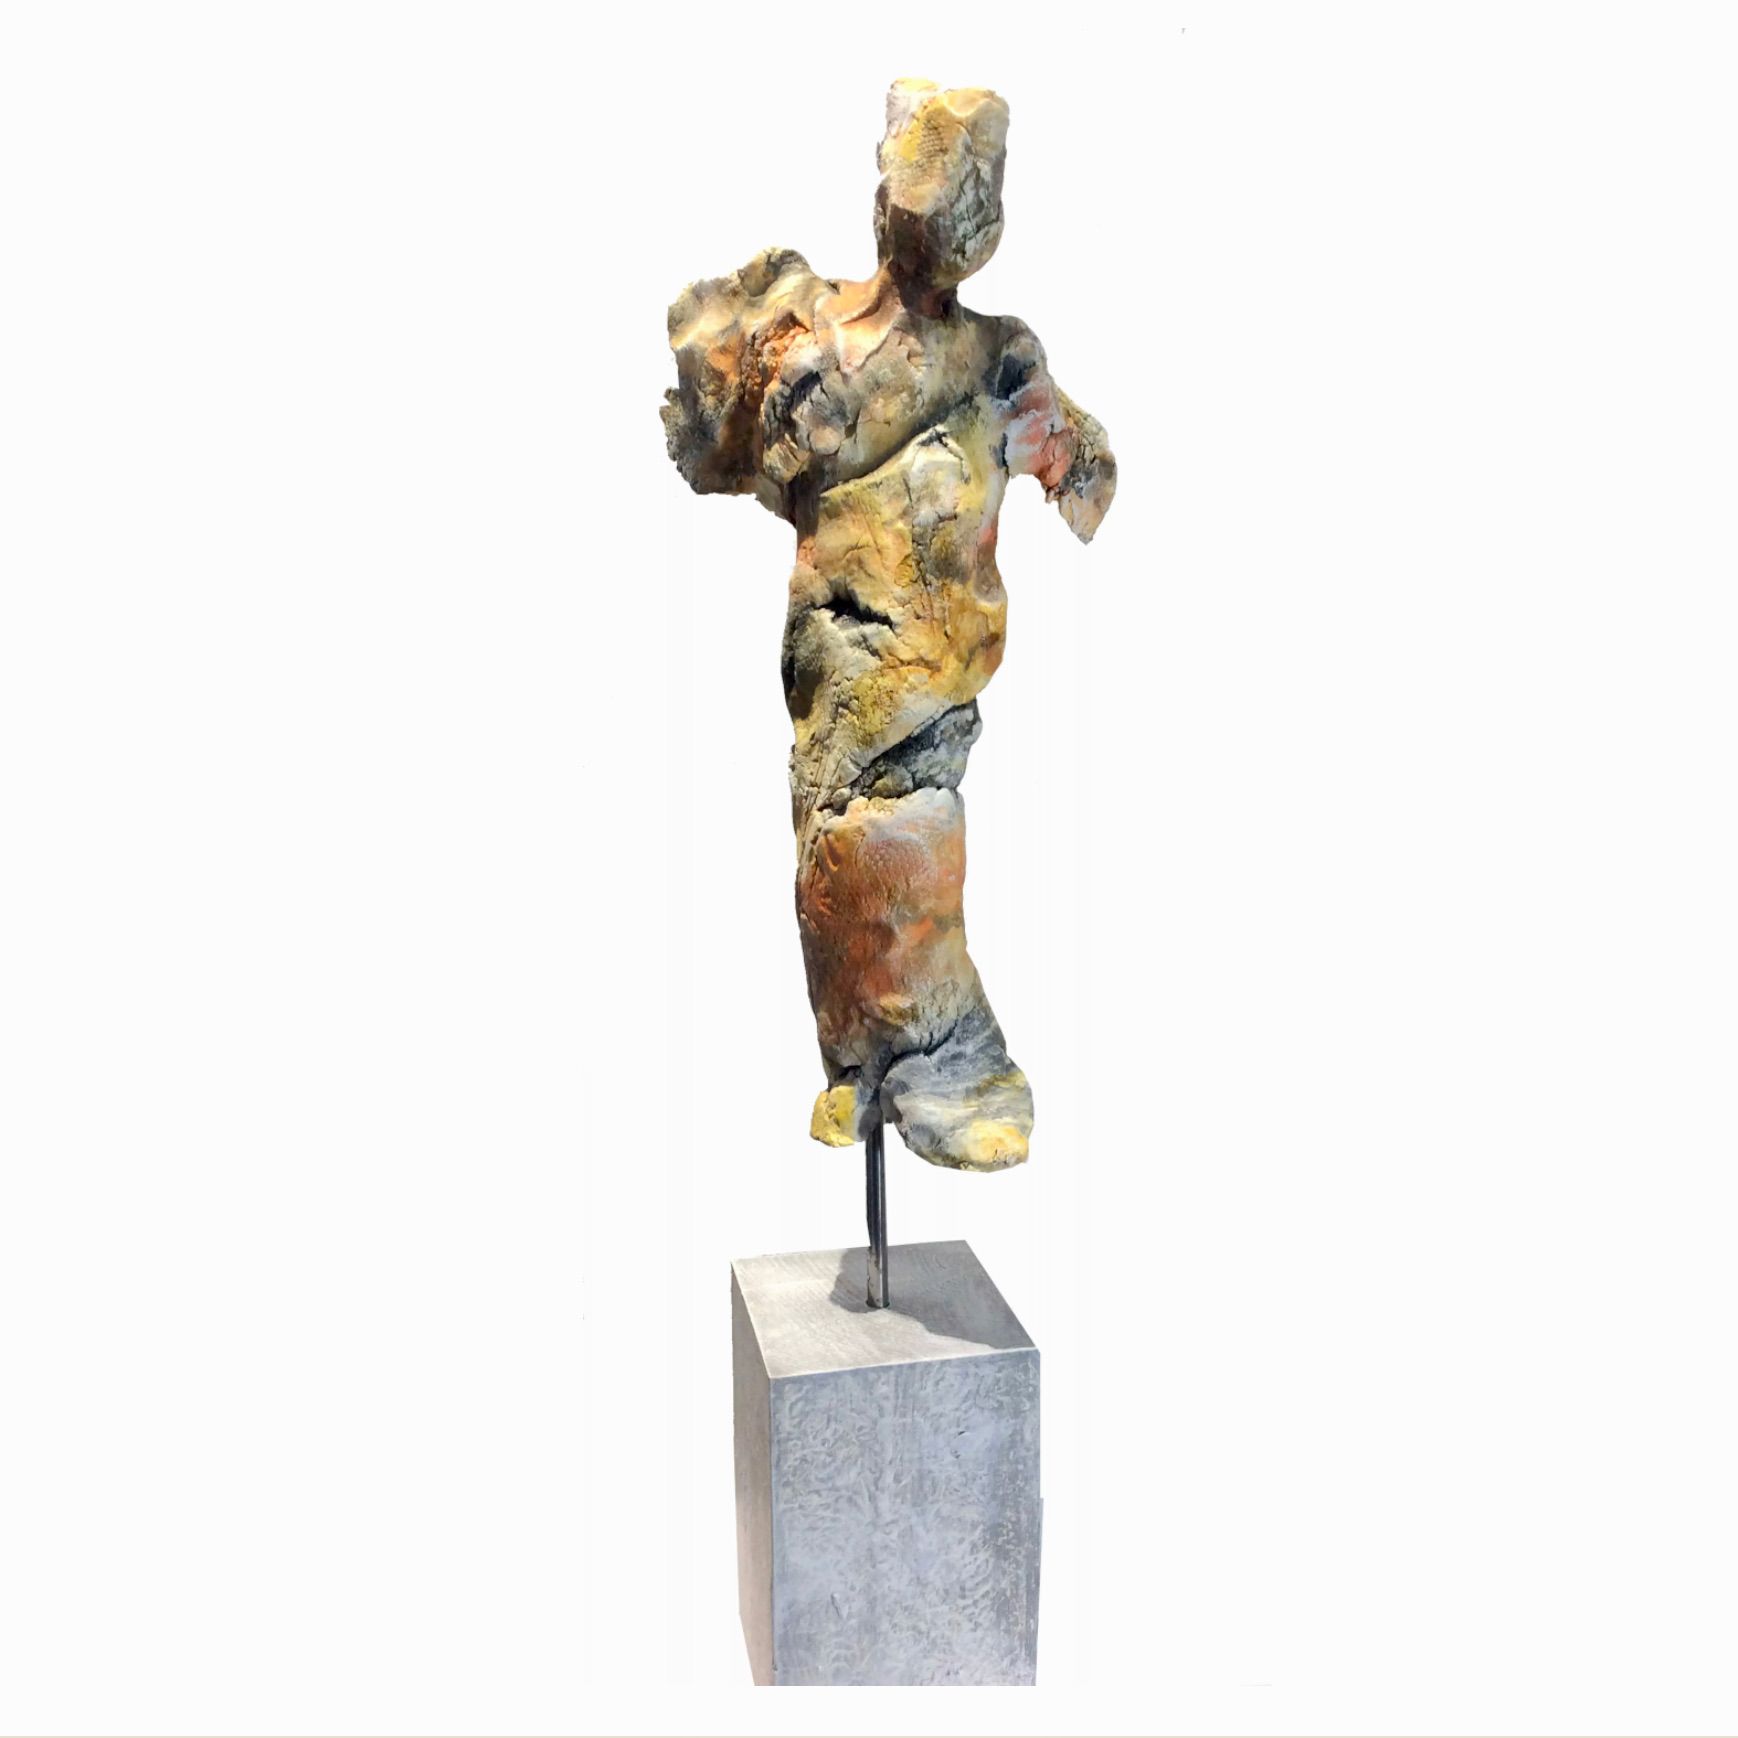 L'opera "FIGURINE NR. XII" di Ilona Schmidt mostra una scultura di un corpo modellato in argilla, cotta, con supporto in legno e patina di colore freddo.